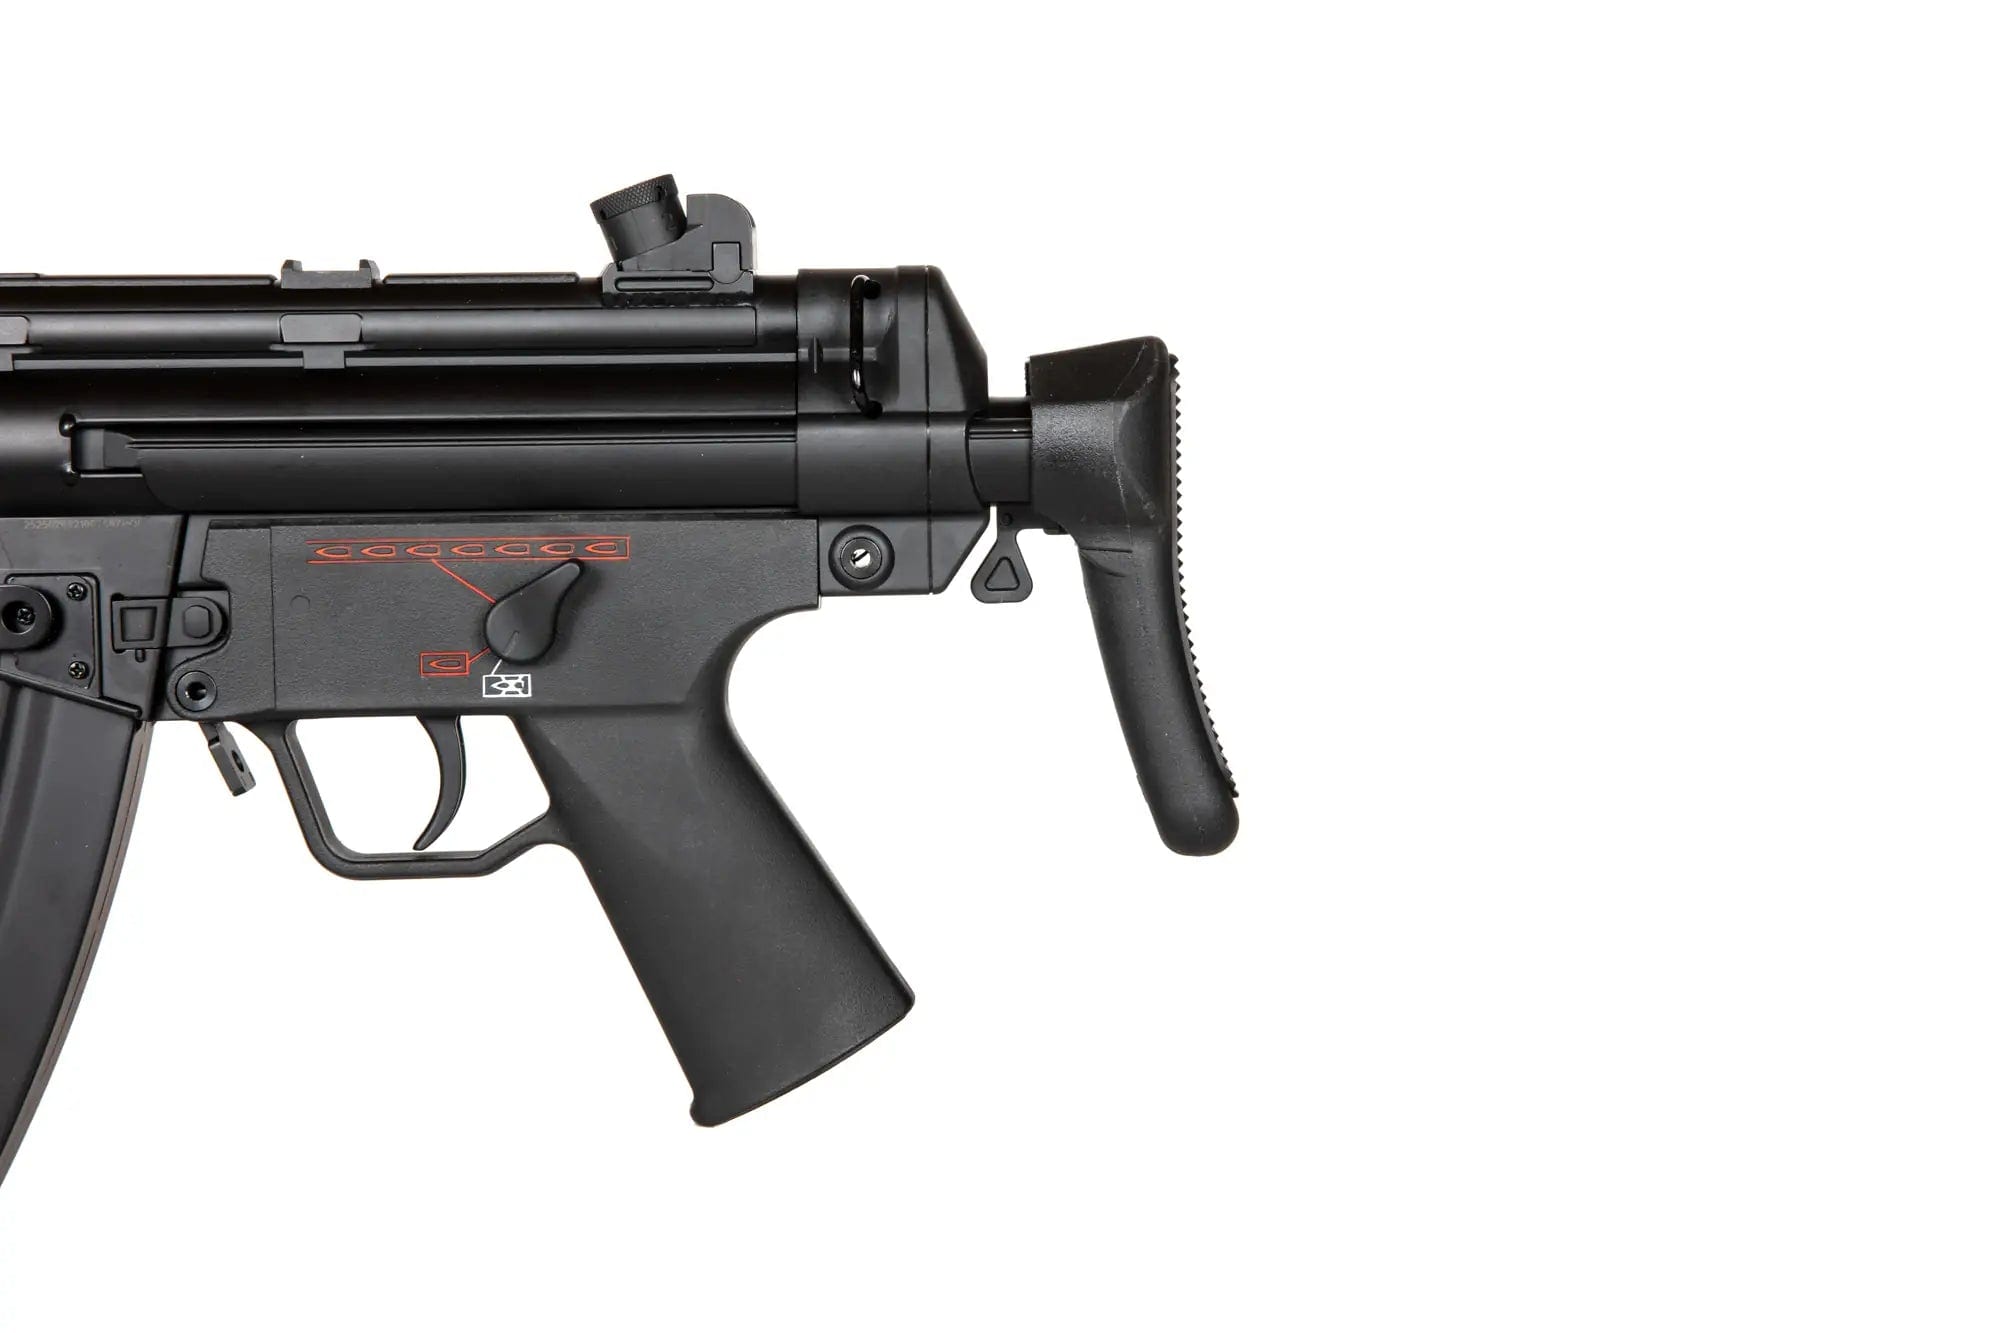 MP5 SD6 airsoft replica (F686SD6)